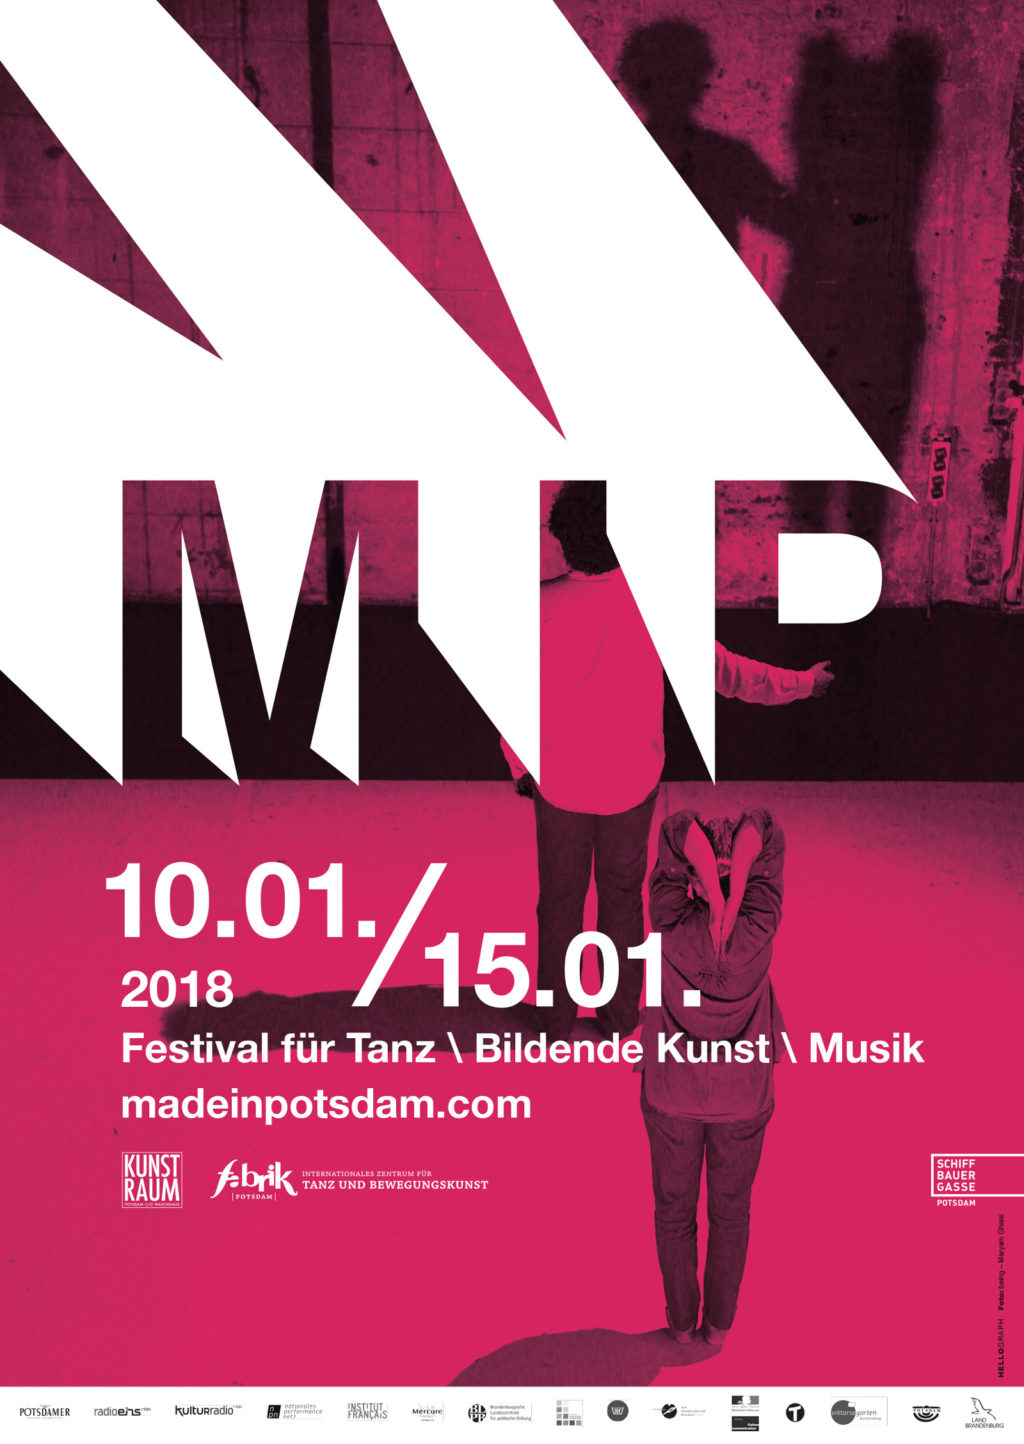 Plakat: Made in Potsdam, Festival für Bildende Kunst, Musik und Tanz